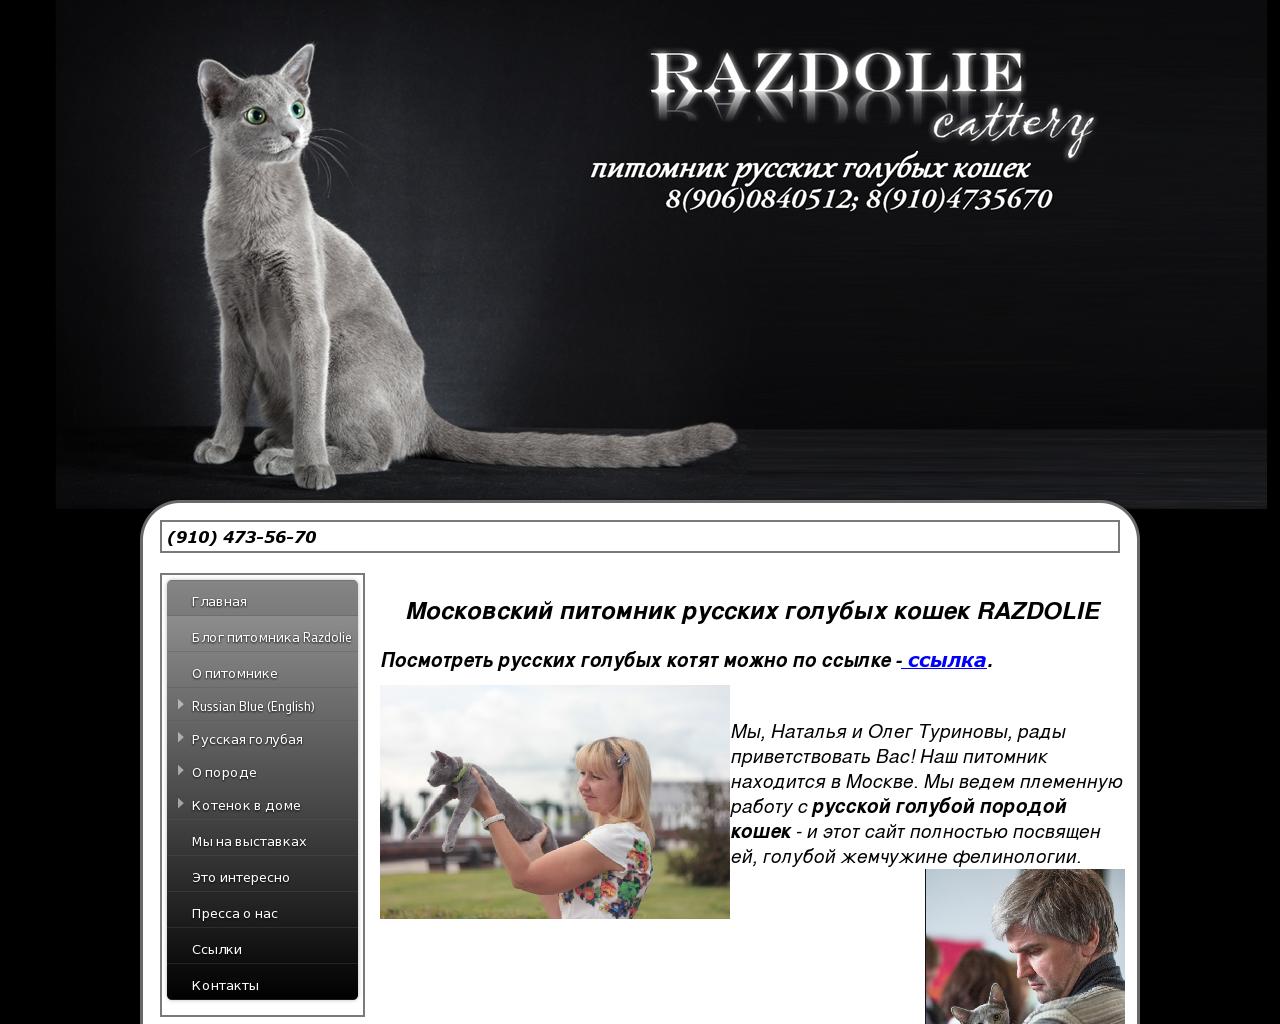 Изображение сайта pitomnik-razdolie.ru в разрешении 1280x1024